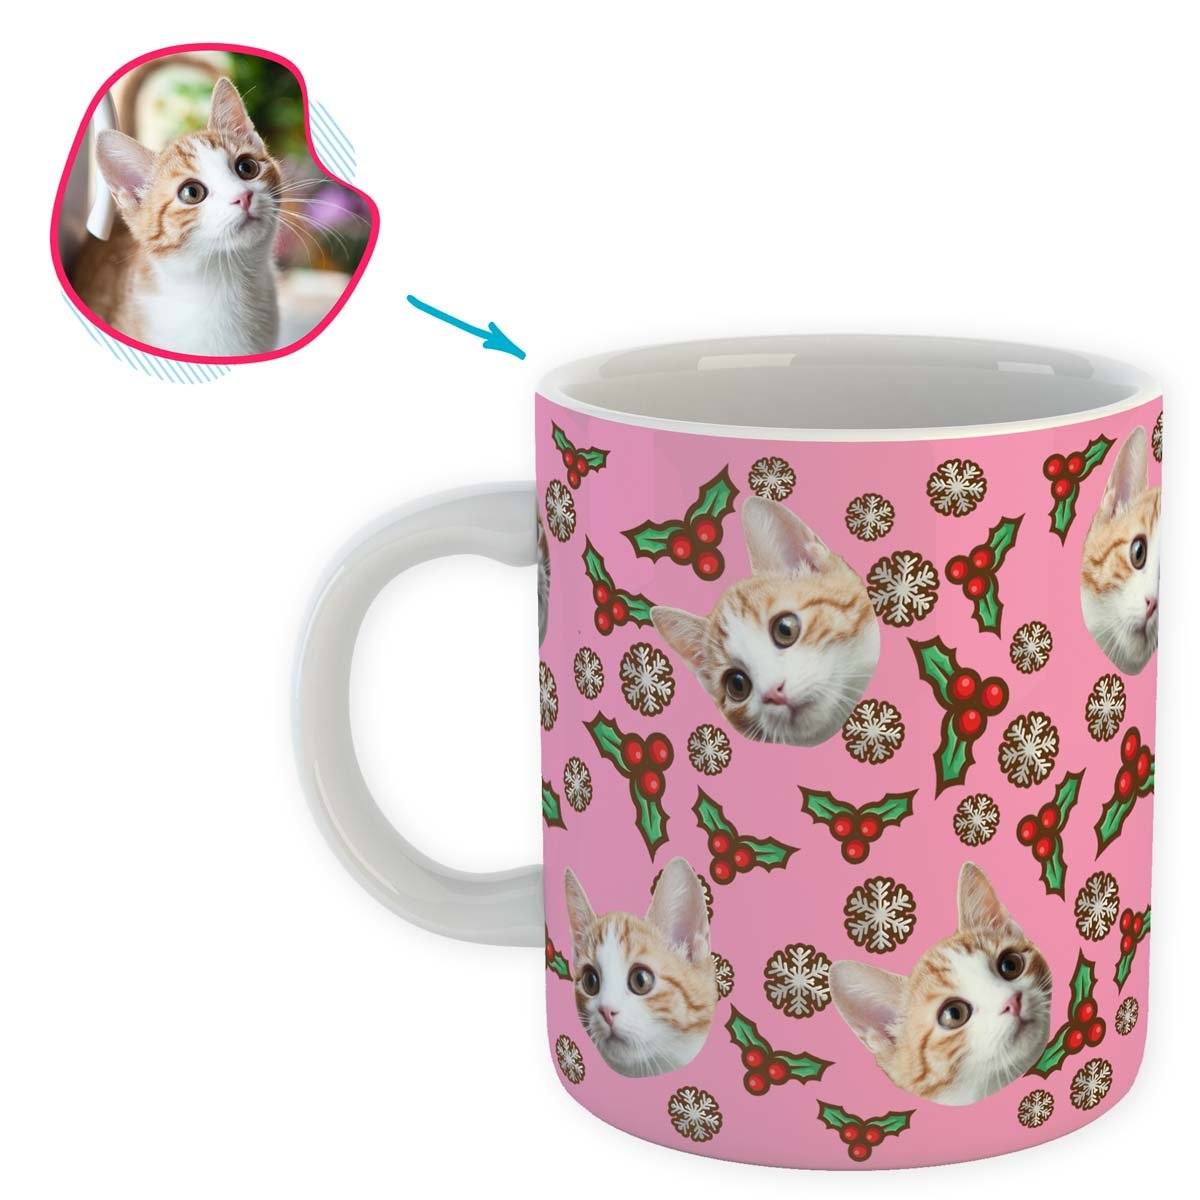 Mistletoe Personalized Mug